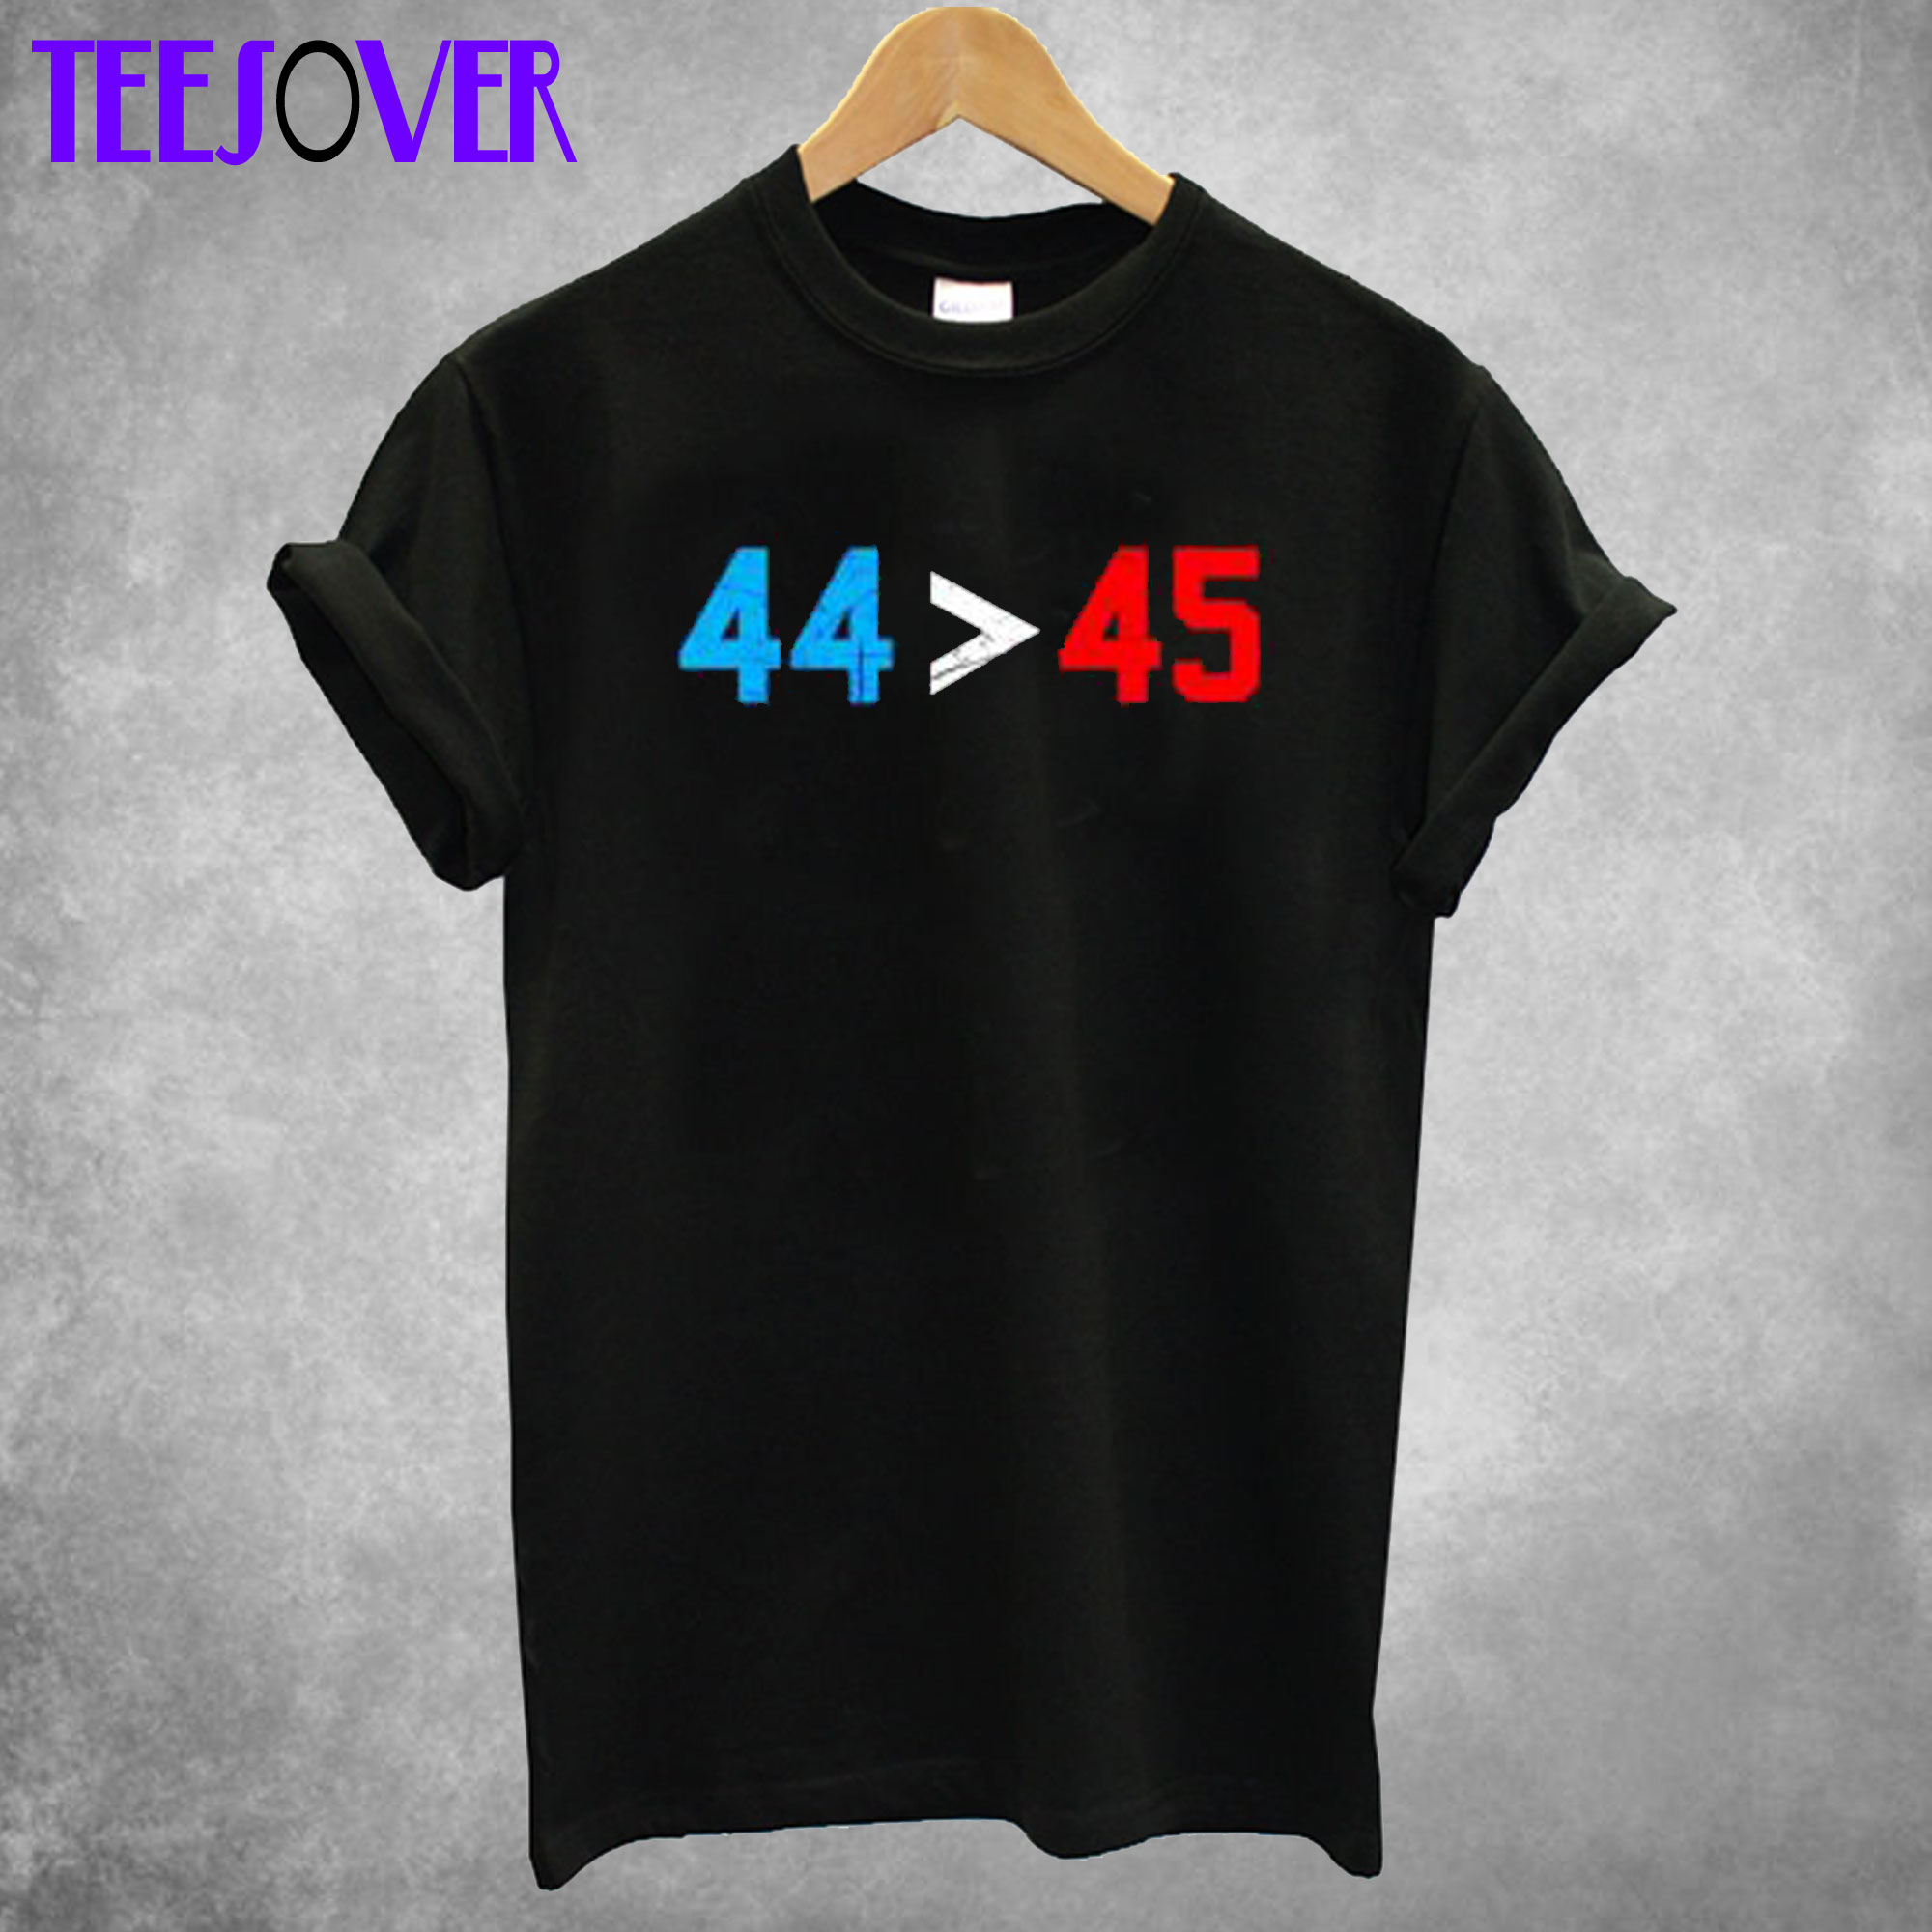 44 45 Better Than Trump T shirt